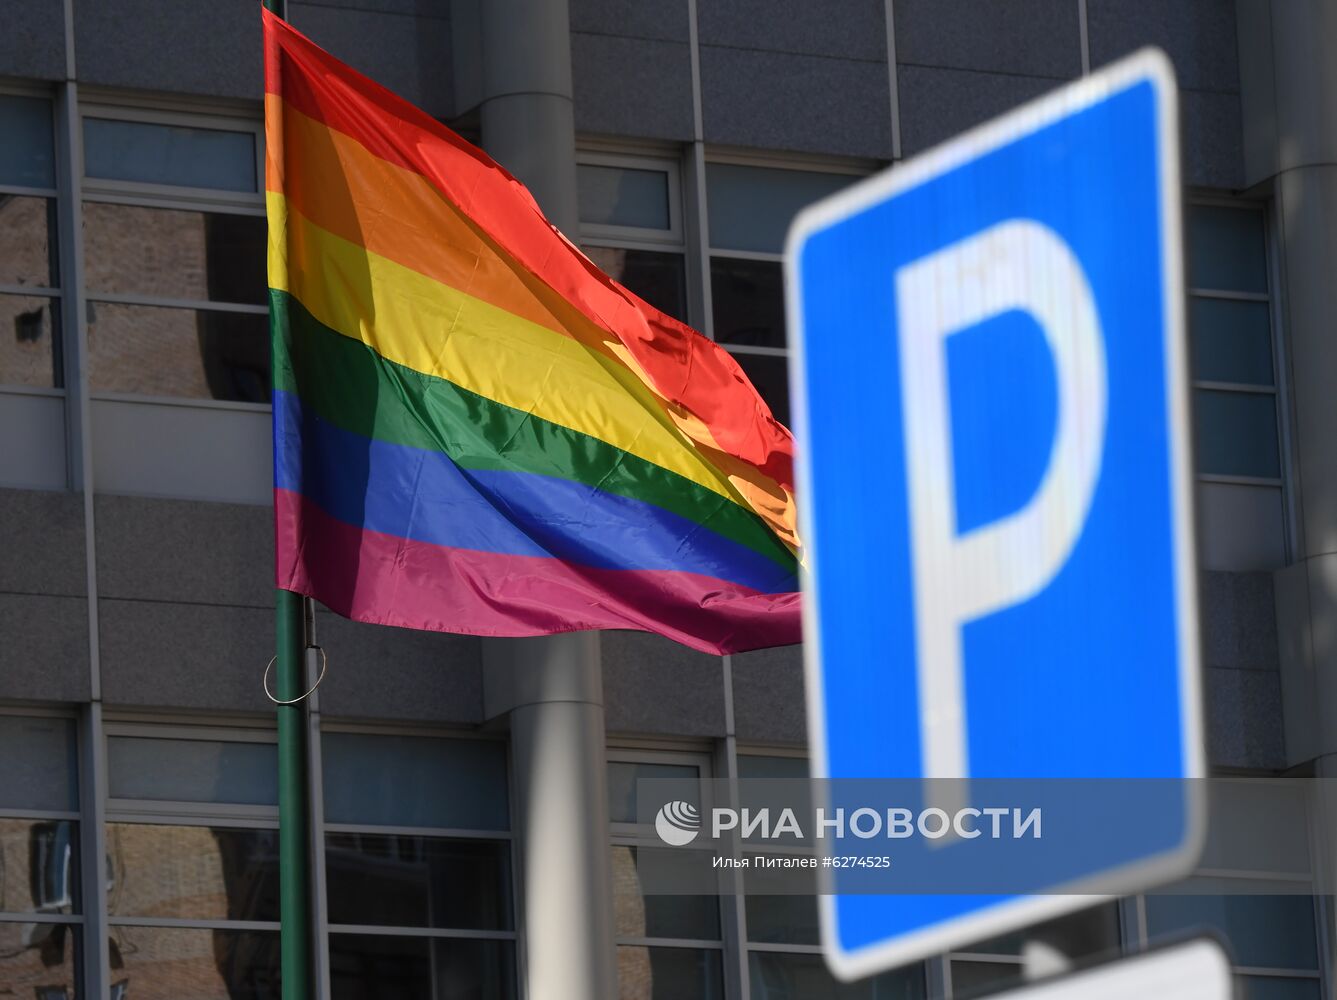 Посольство Великобритании в Москве вывесило флаг ЛГБТ-сообщества 